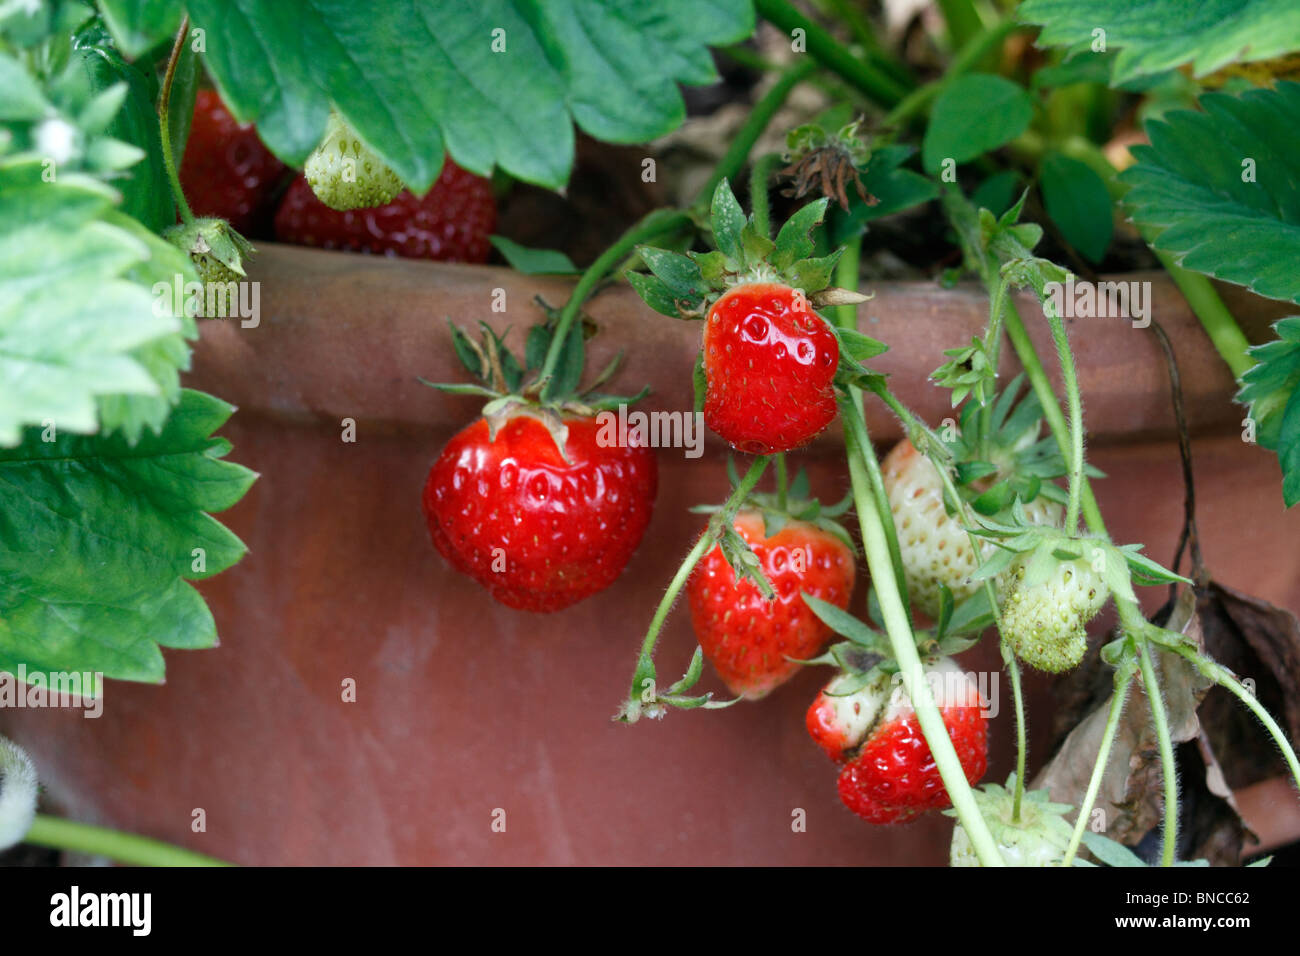 Topf angebaute Erdbeeren, Fragaria Ananassa - Rhapsodie. Lange konische Früchte, die groß bis mittelgroß mit einem attraktiven Hochglanz-rot und feste Fleisch sind. Früchte sind saftig und haben guten Geschmack. Stockfoto